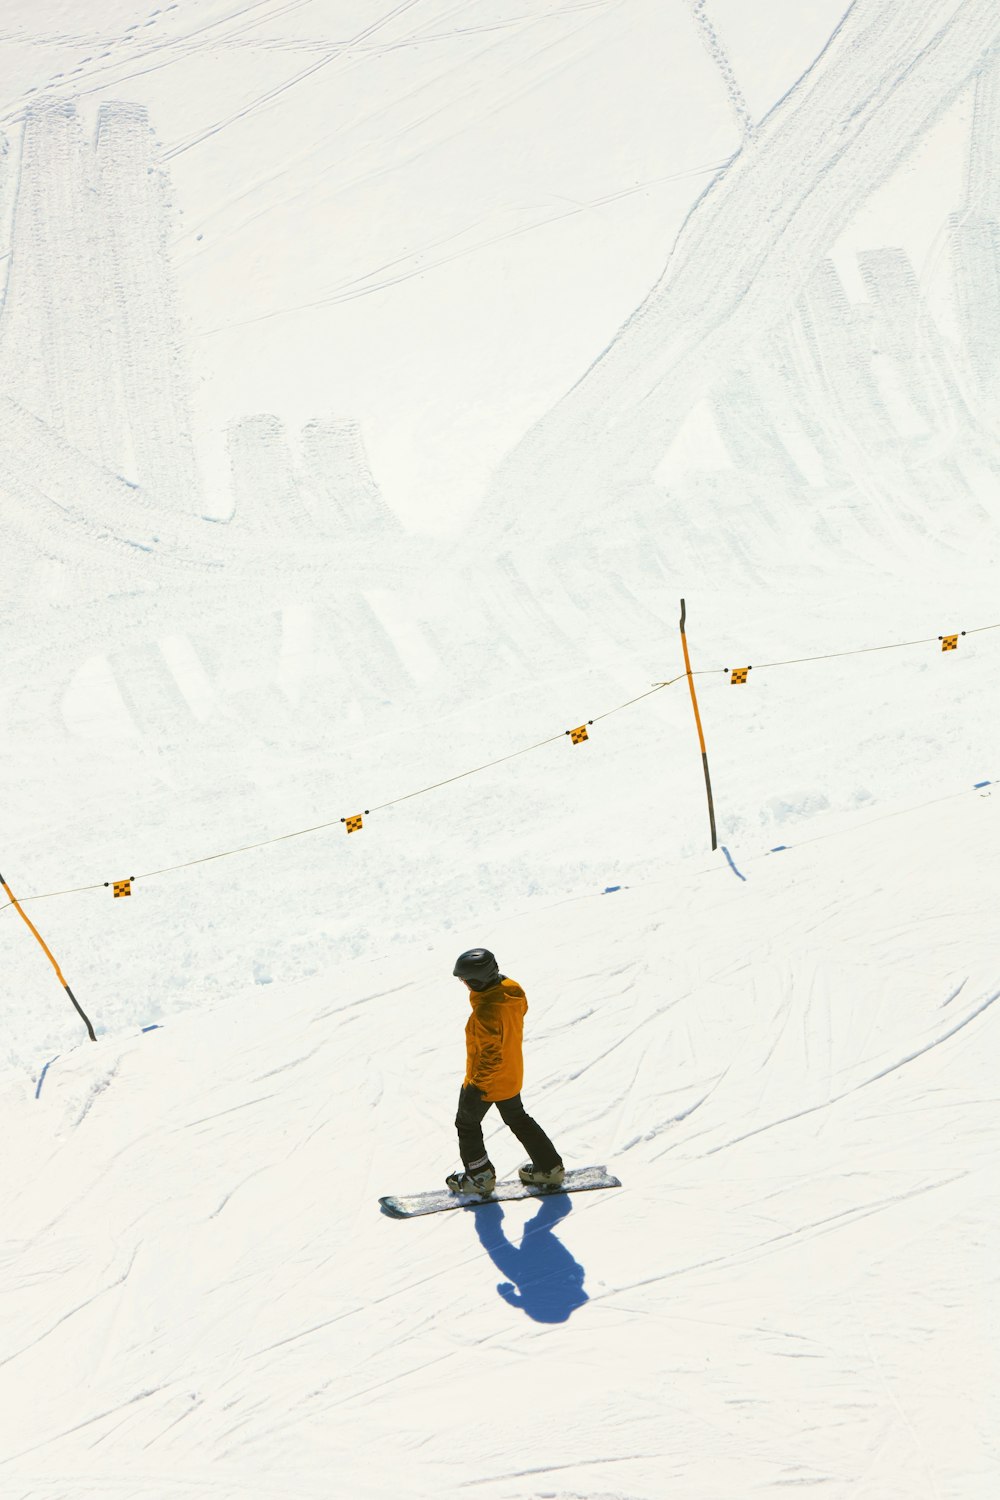 Premium Photo  Freeride snowboarder sliding down the mountain slope